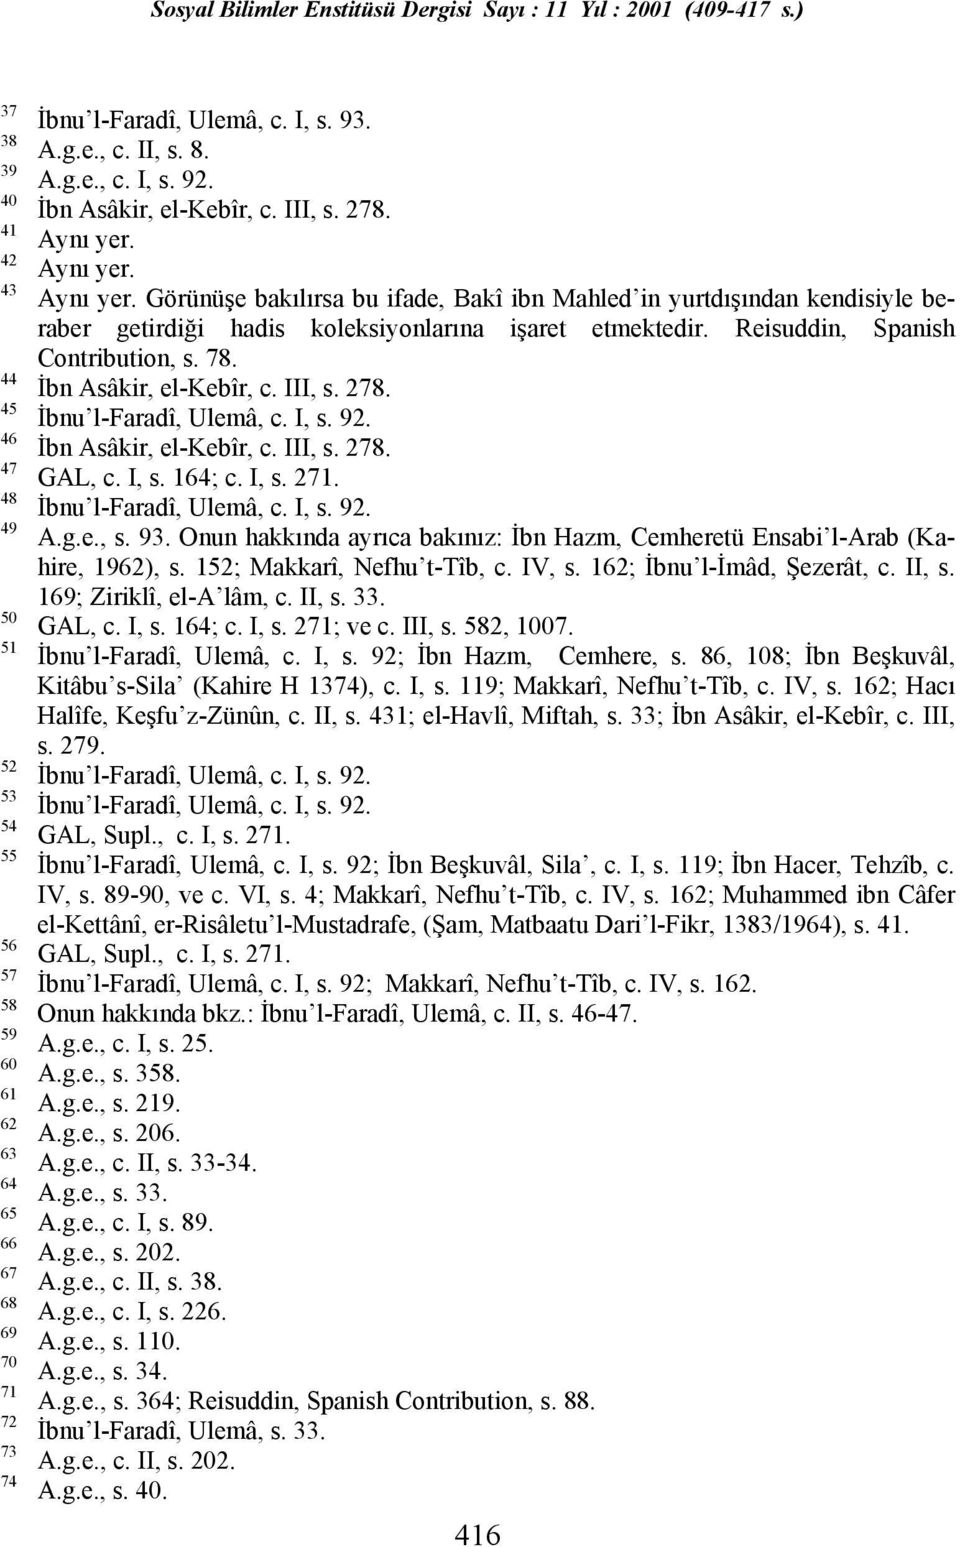 Reisuddin, Spanish Contribution, s. 78. İbn Asâkir, el-kebîr, c. III, s. 278. İbn Asâkir, el-kebîr, c. III, s. 278. GAL, c. I, s. 164; c. I, s. 271. A.g.e., s. 93.